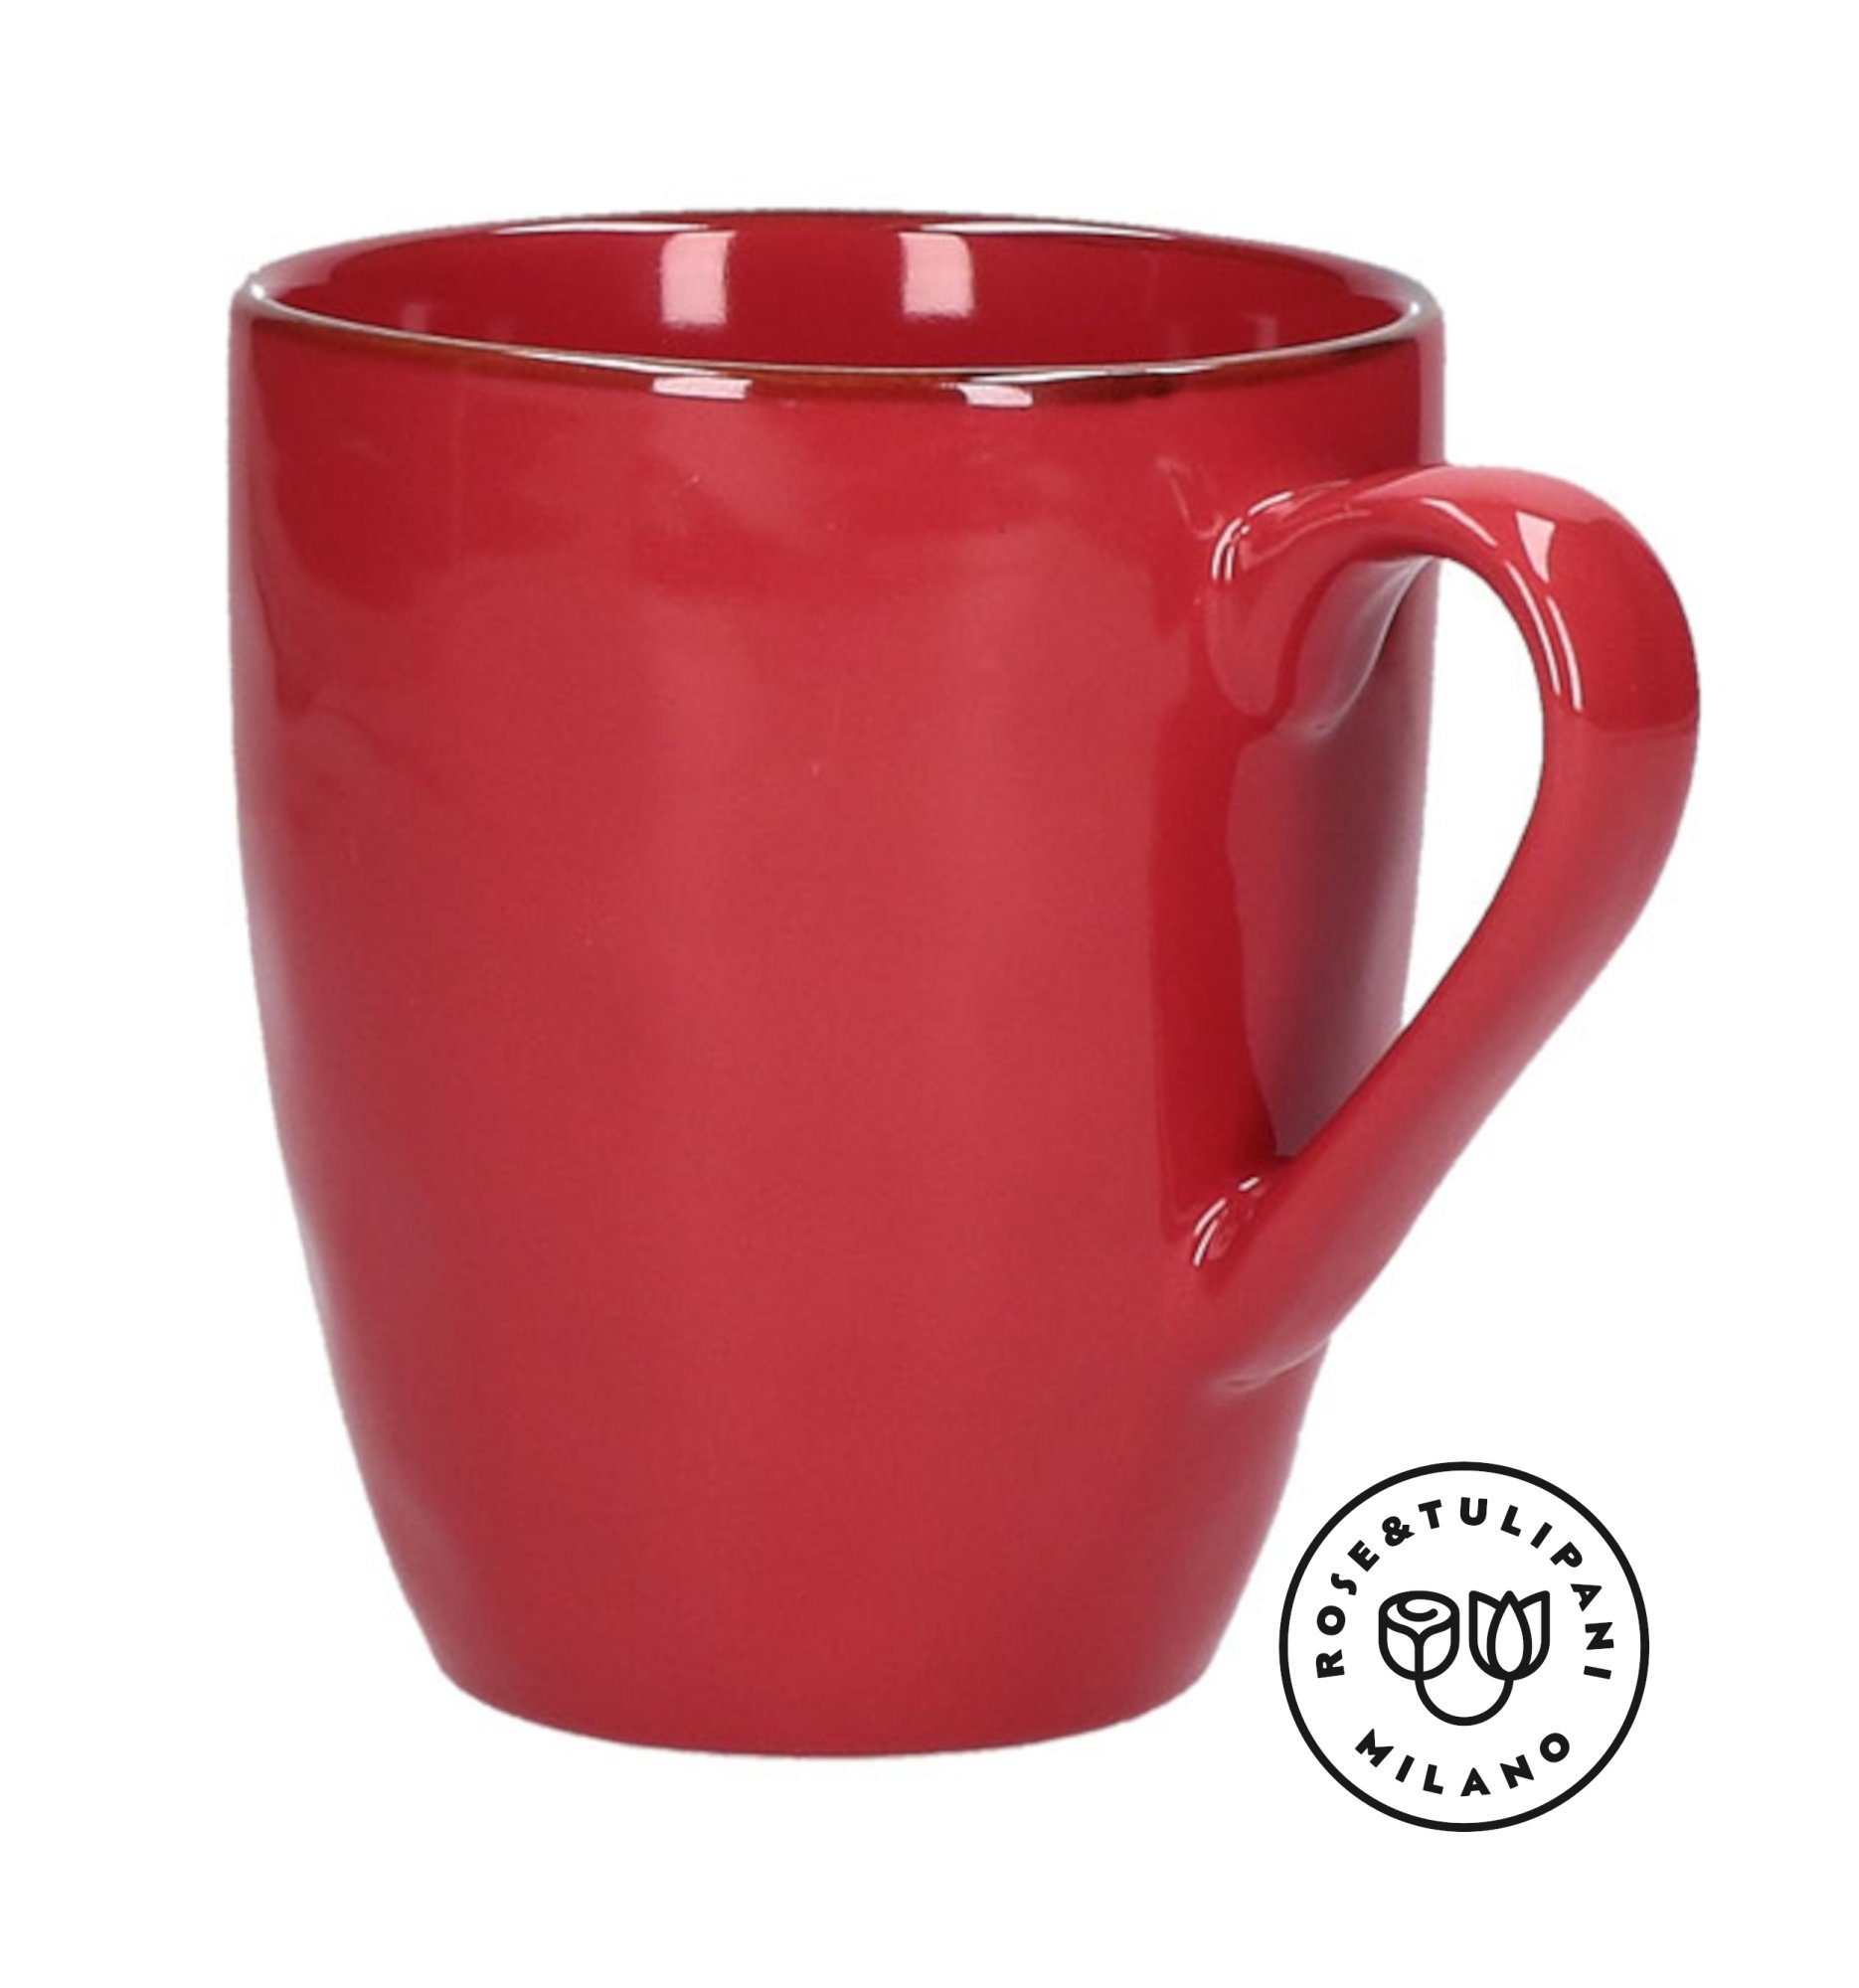 mit Große Kaffeetasse Henkel Rose Steingut & Tulpani 430ml Handgefertigt Tasse Rot, Steingut, Becher Tasse